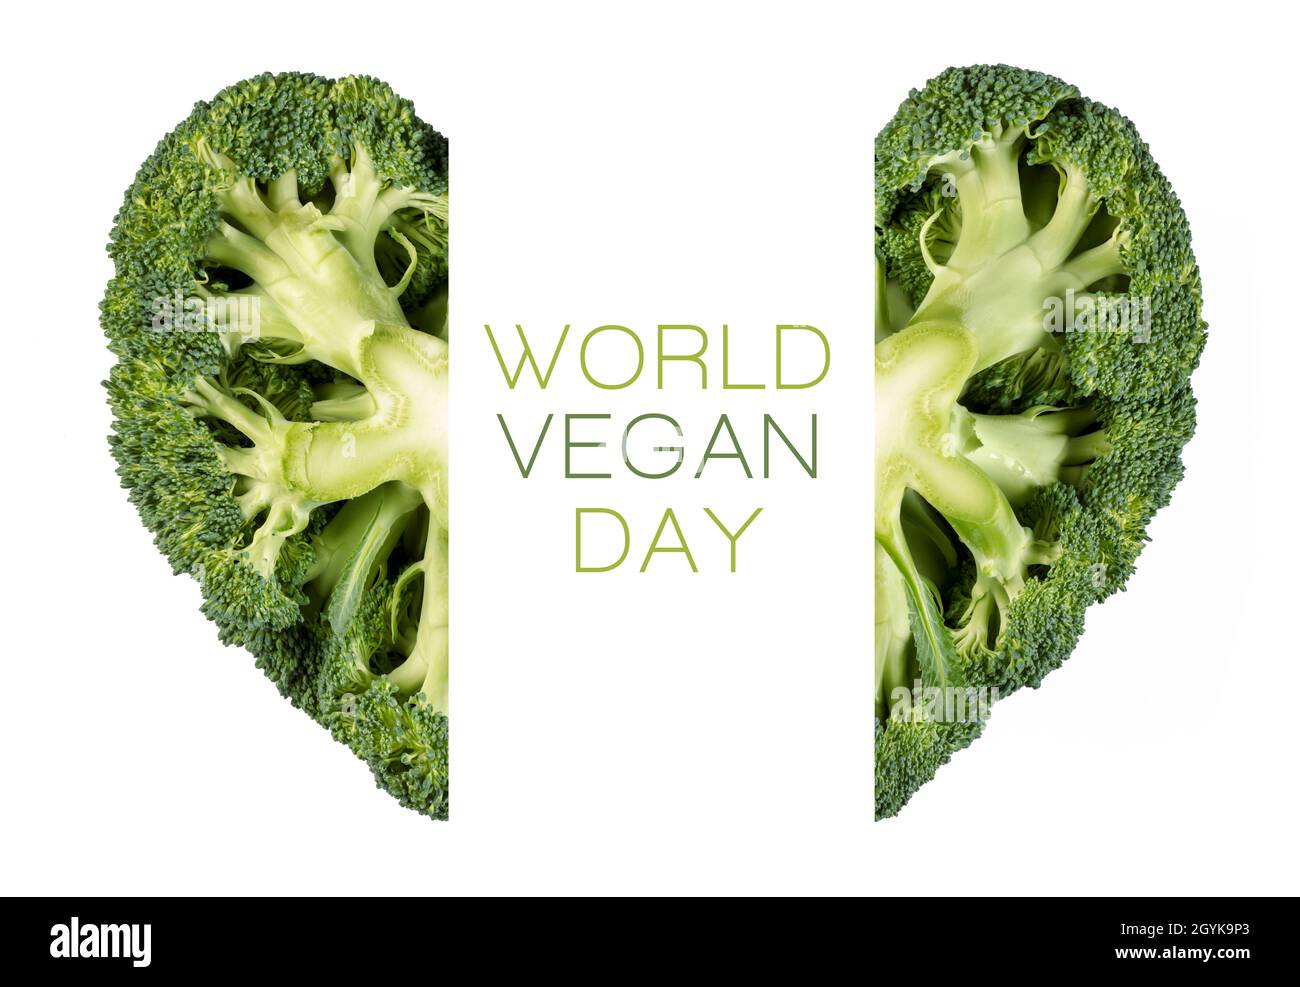 World Vegan Day Poster Design mit herzförmigen Brokkoli durch die Mitte geschnitten, um den zentralen Text auf einem weißen Hintergrund unterzubringen Stockfoto